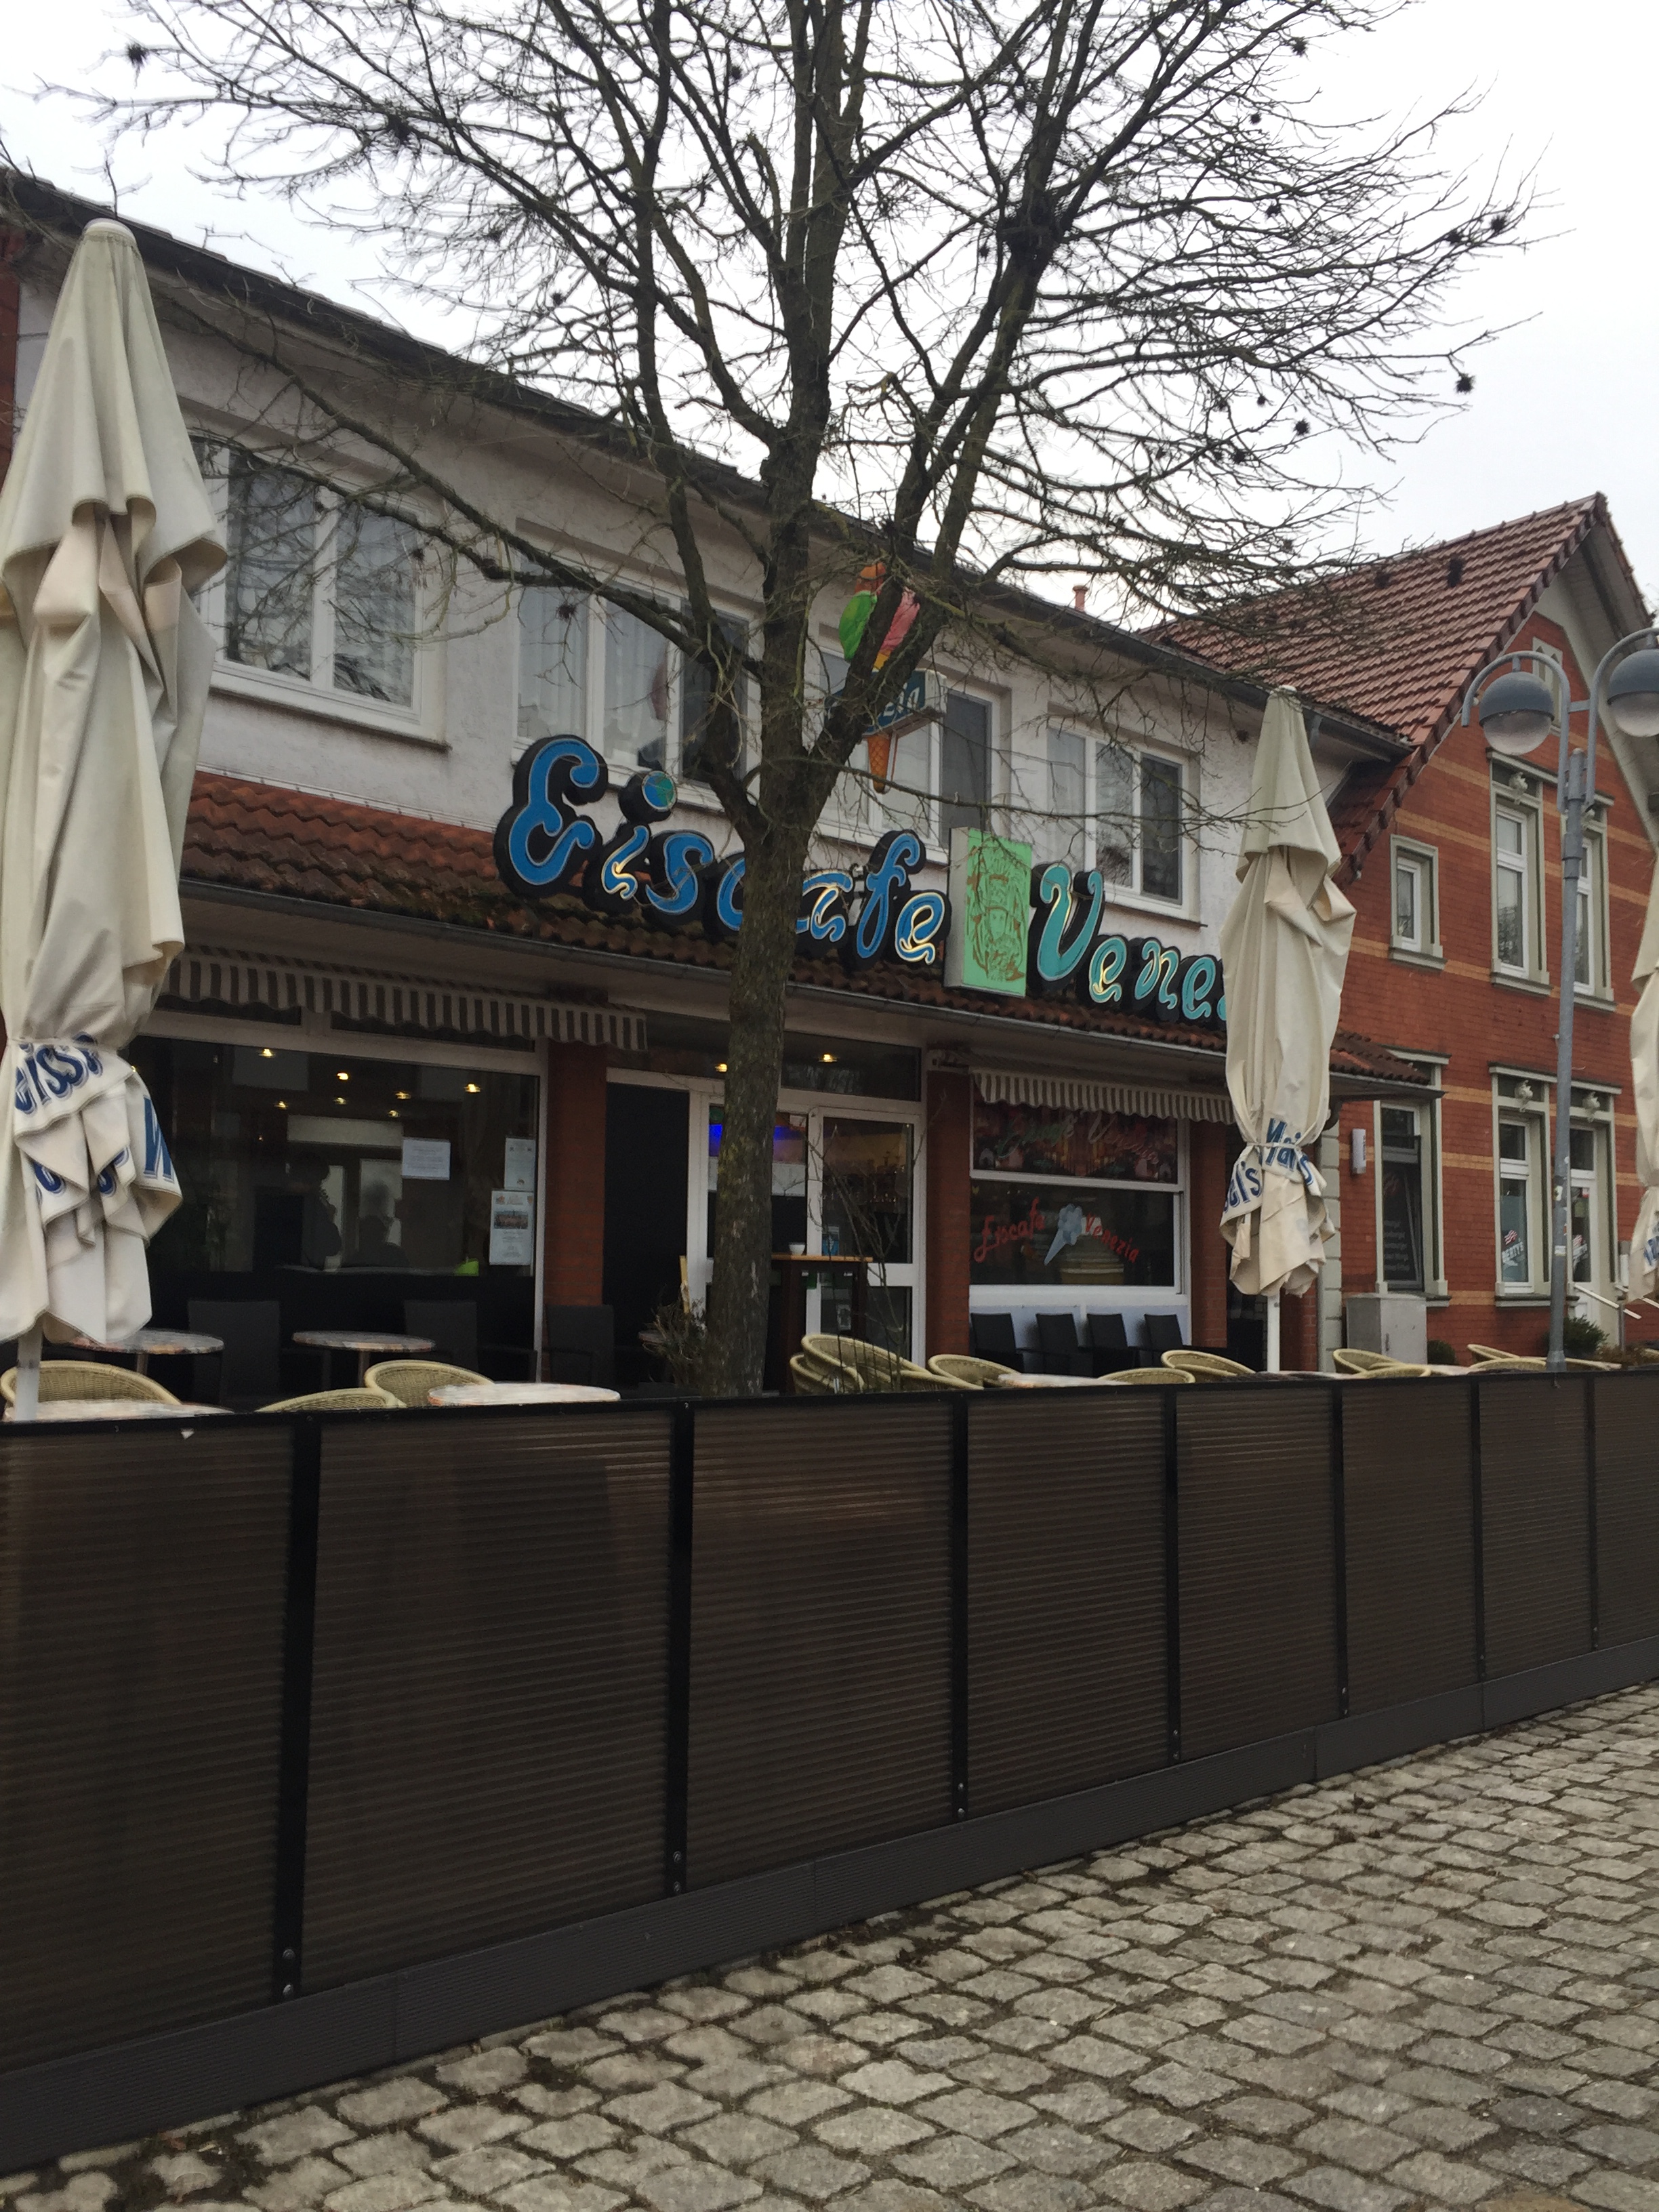 Bild 1 Eiscafe Venezia in Harpstedt